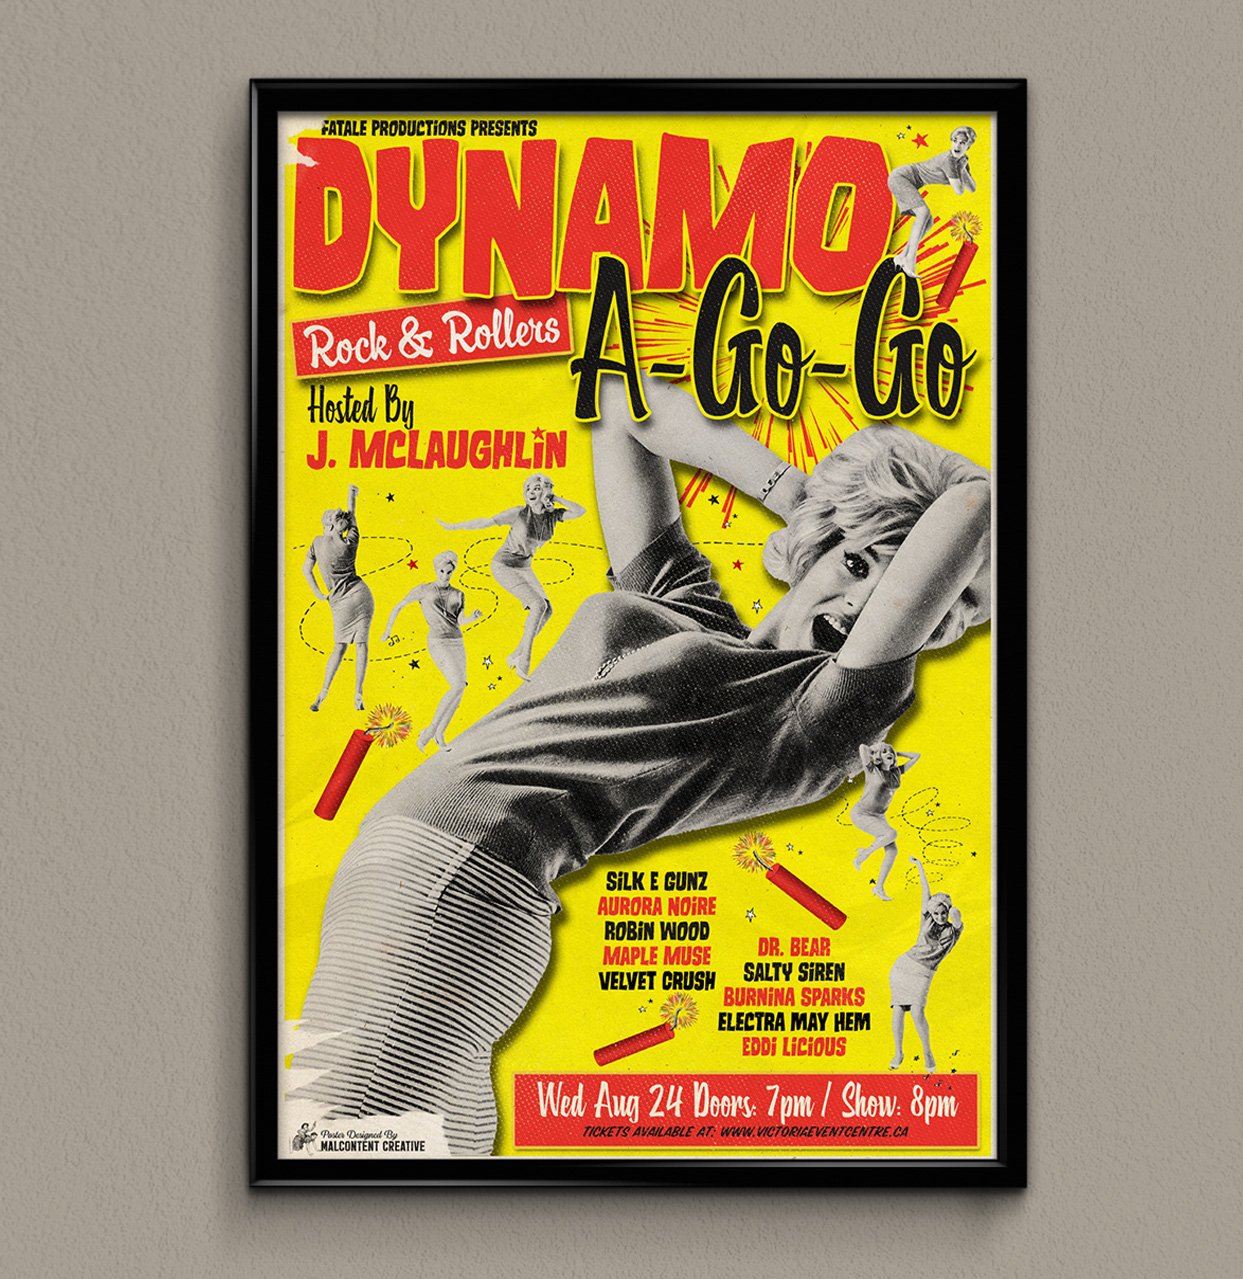 Poster Design: Dynamo-A-Go-Go, Victoria BC